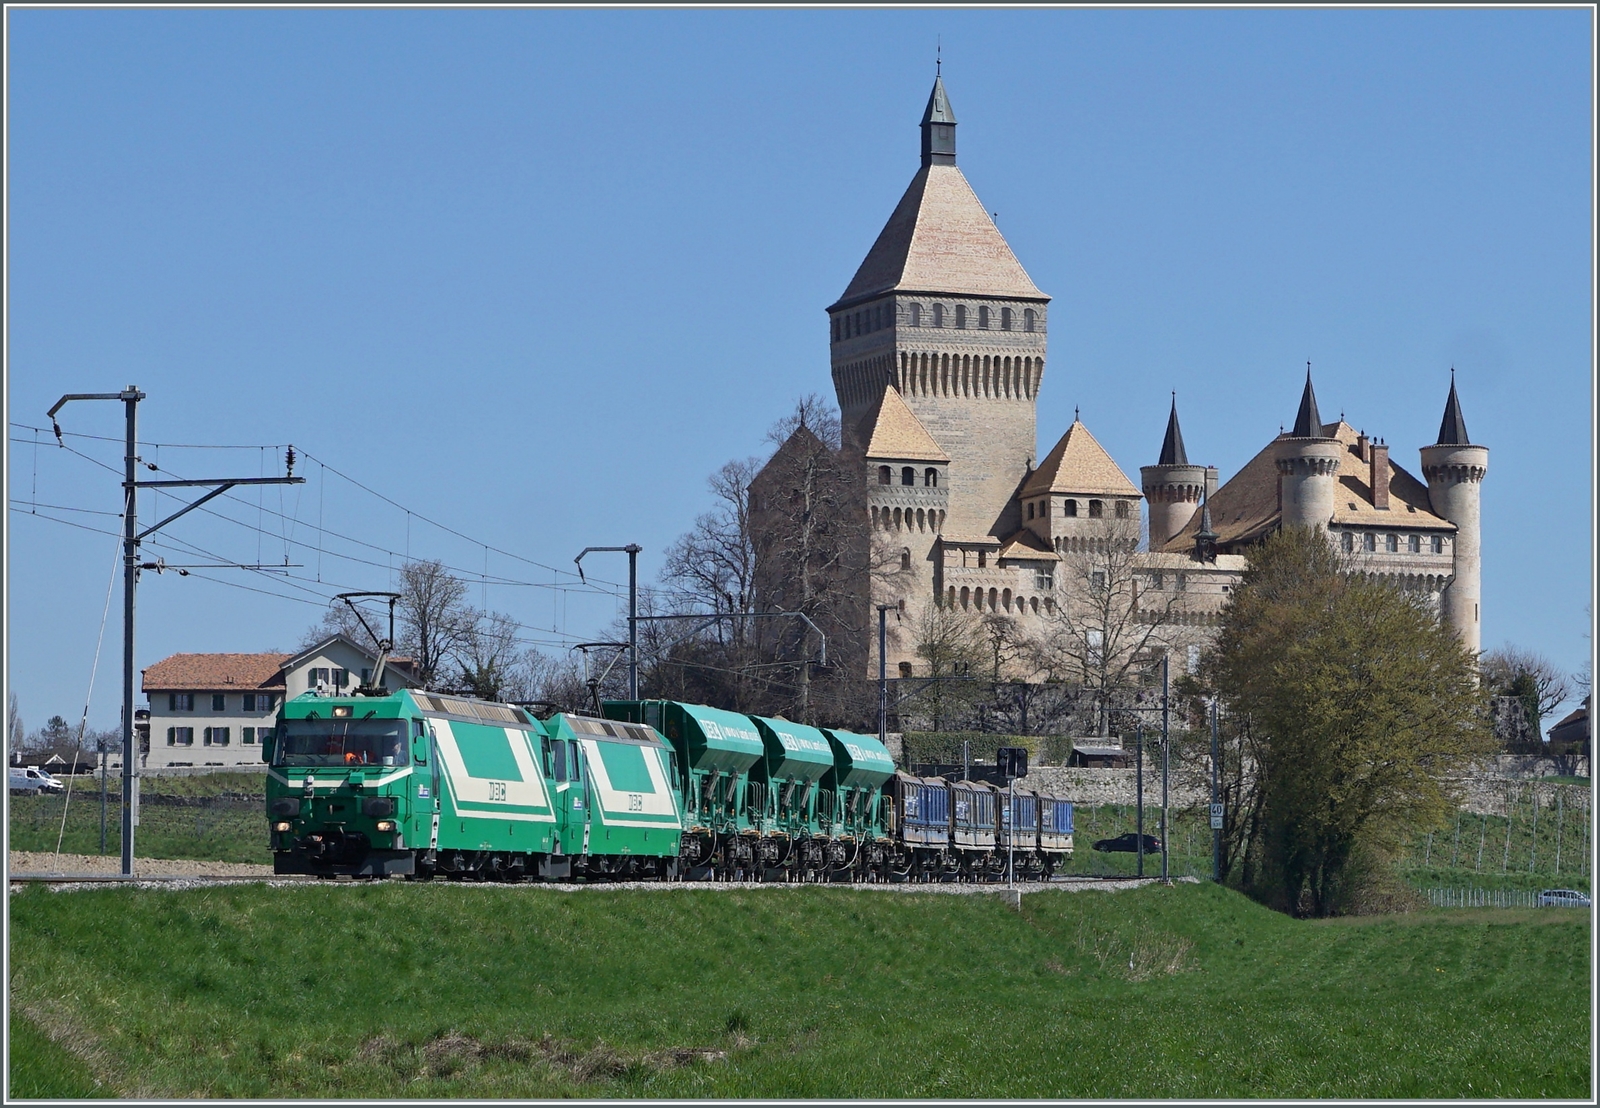 Die beiden BAM MBC Ge 4/4 21 und 22 sind mit ihrem Kieszug Apples - Morges - Gland bei Vufflens le Château unterwegs. Den Hintergrund prägt das zauberhafte Schloss von Vufflens. 

5. April 2023